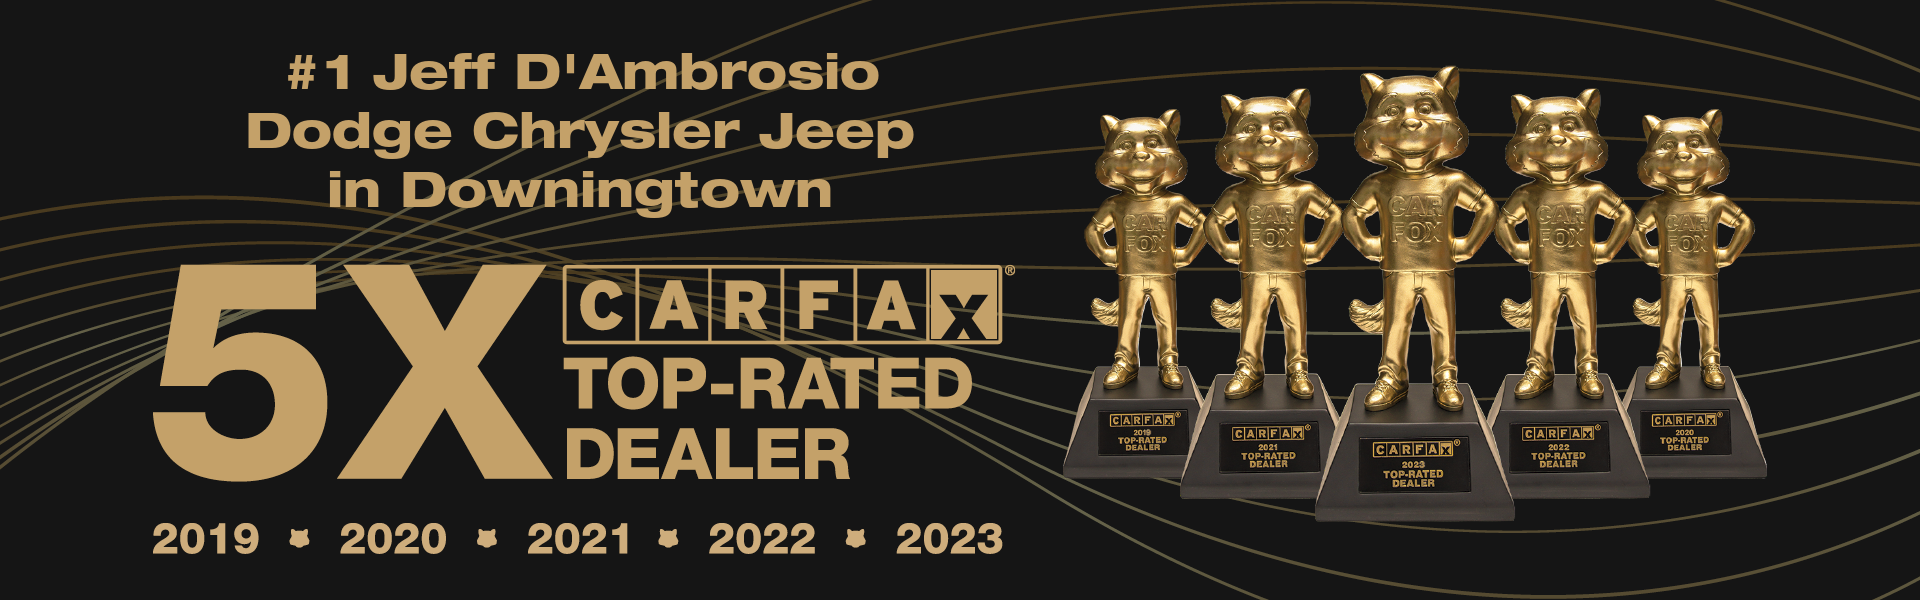 CarFax Top-Rated Dealer 5x